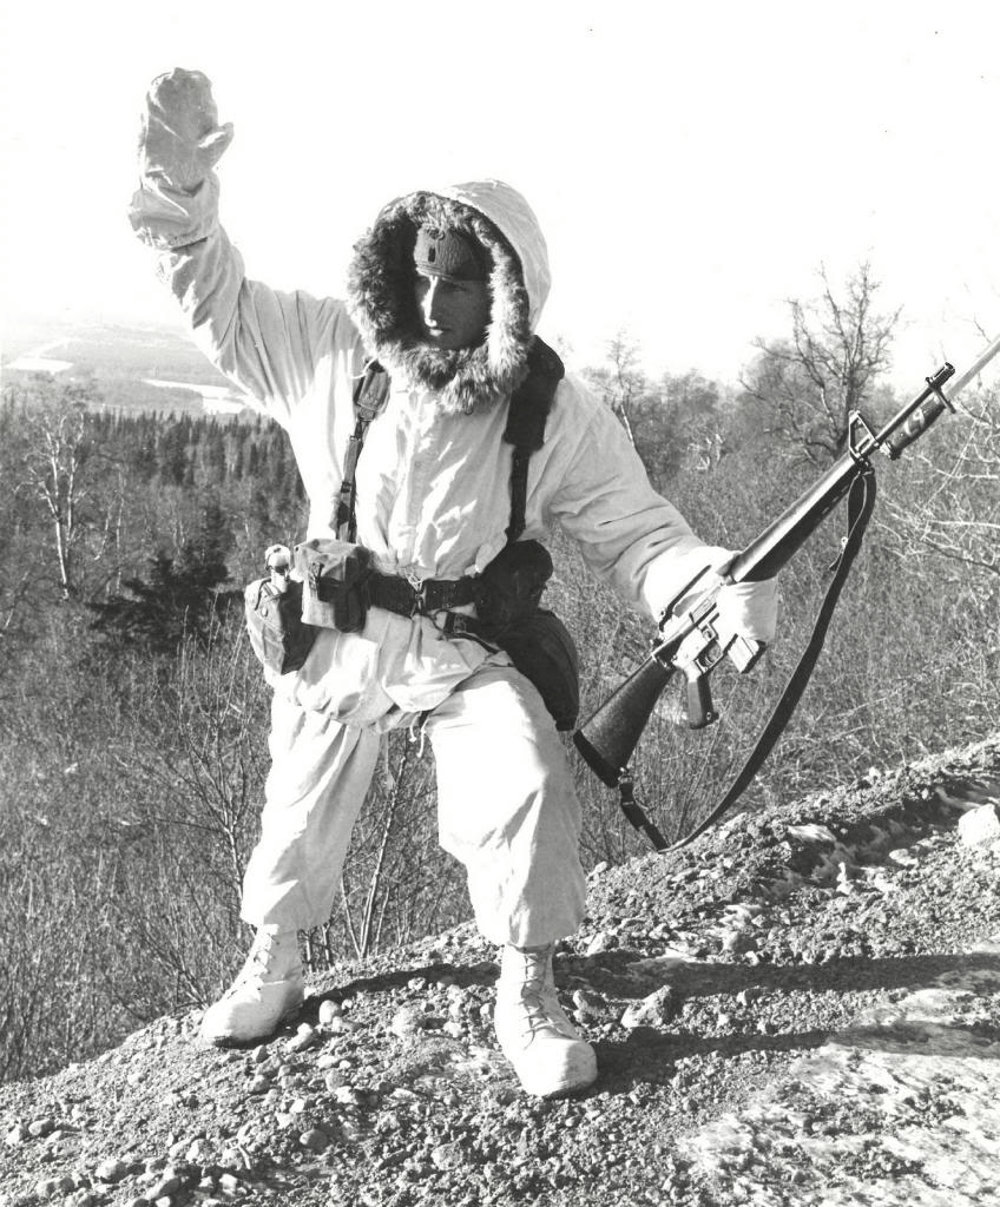 Lt. Paul Landowski, 2nd Platoon Leader, c.1972